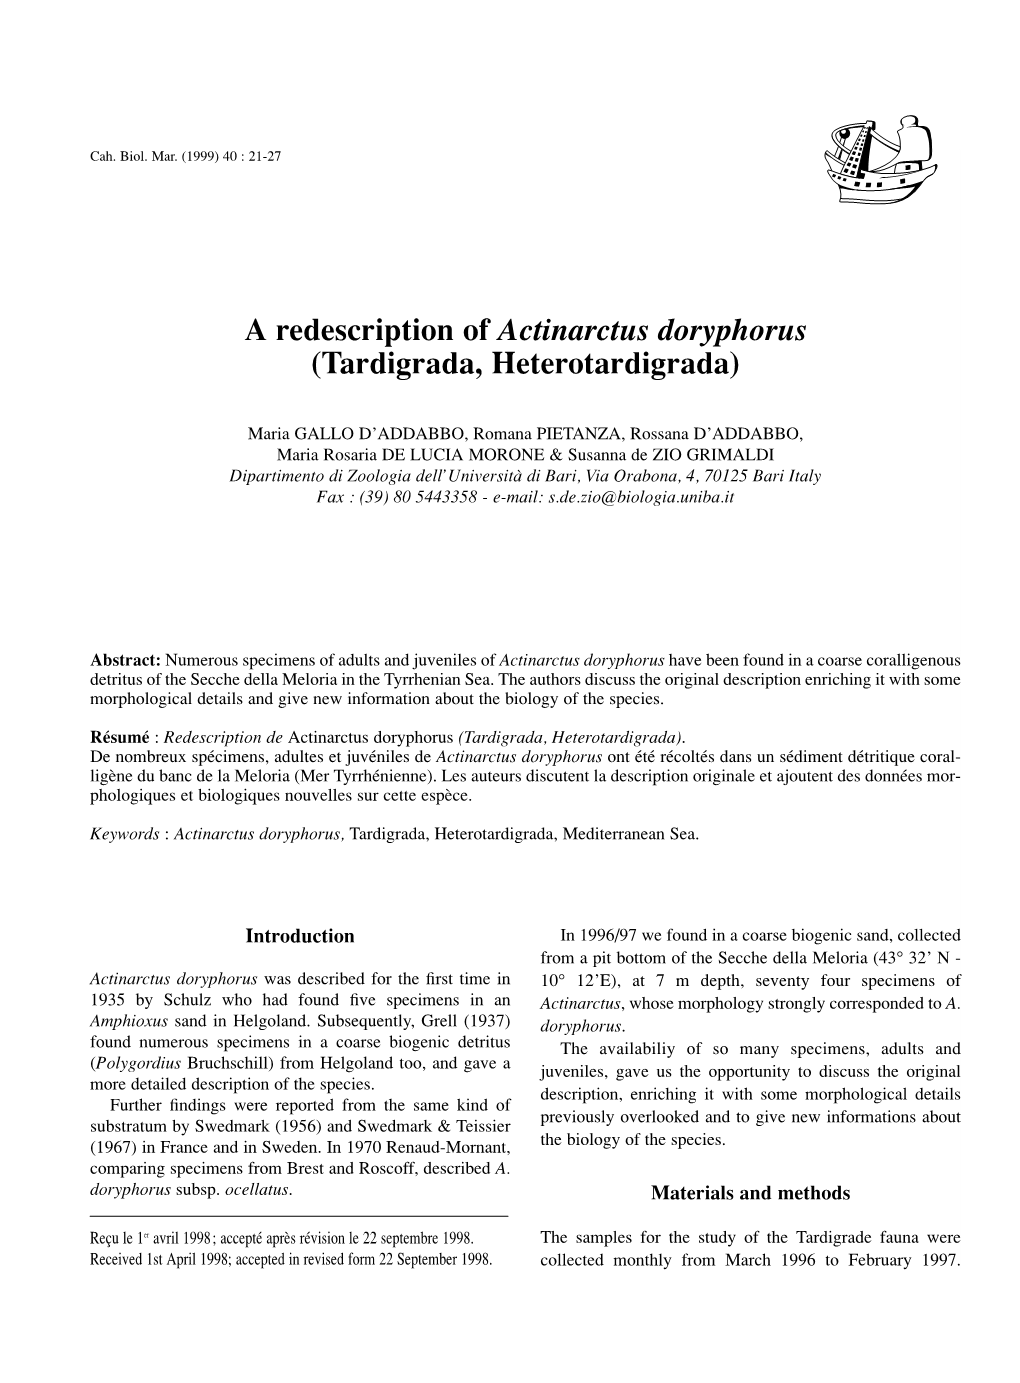 A Redescription of Actinarctus Doryphorus (Tardigrada, Heterotardigrada)